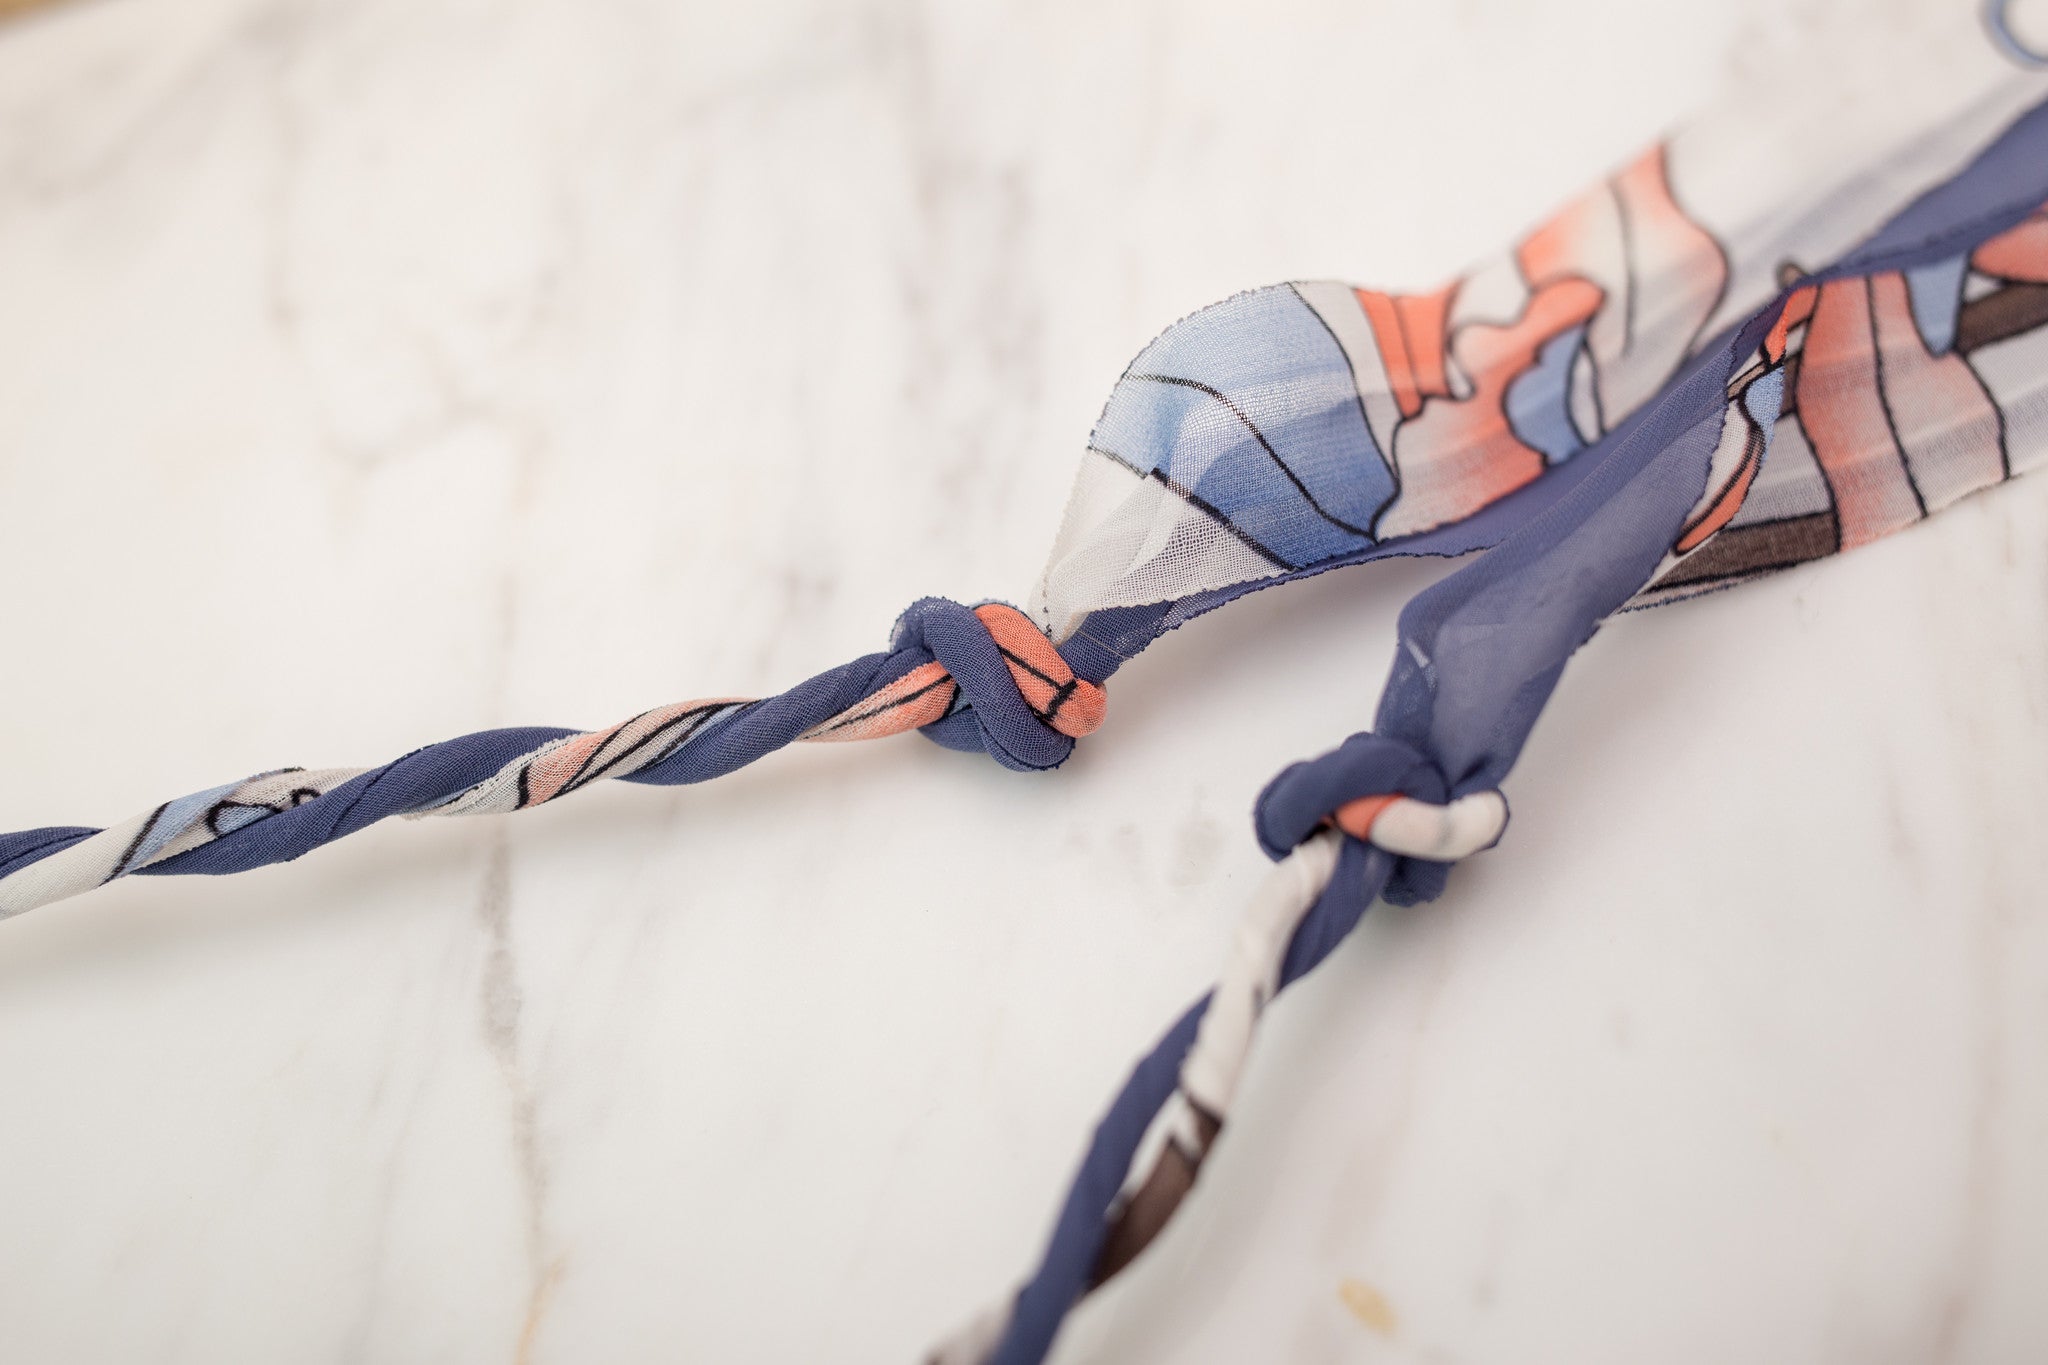 Hairband with ribbon / HA8038